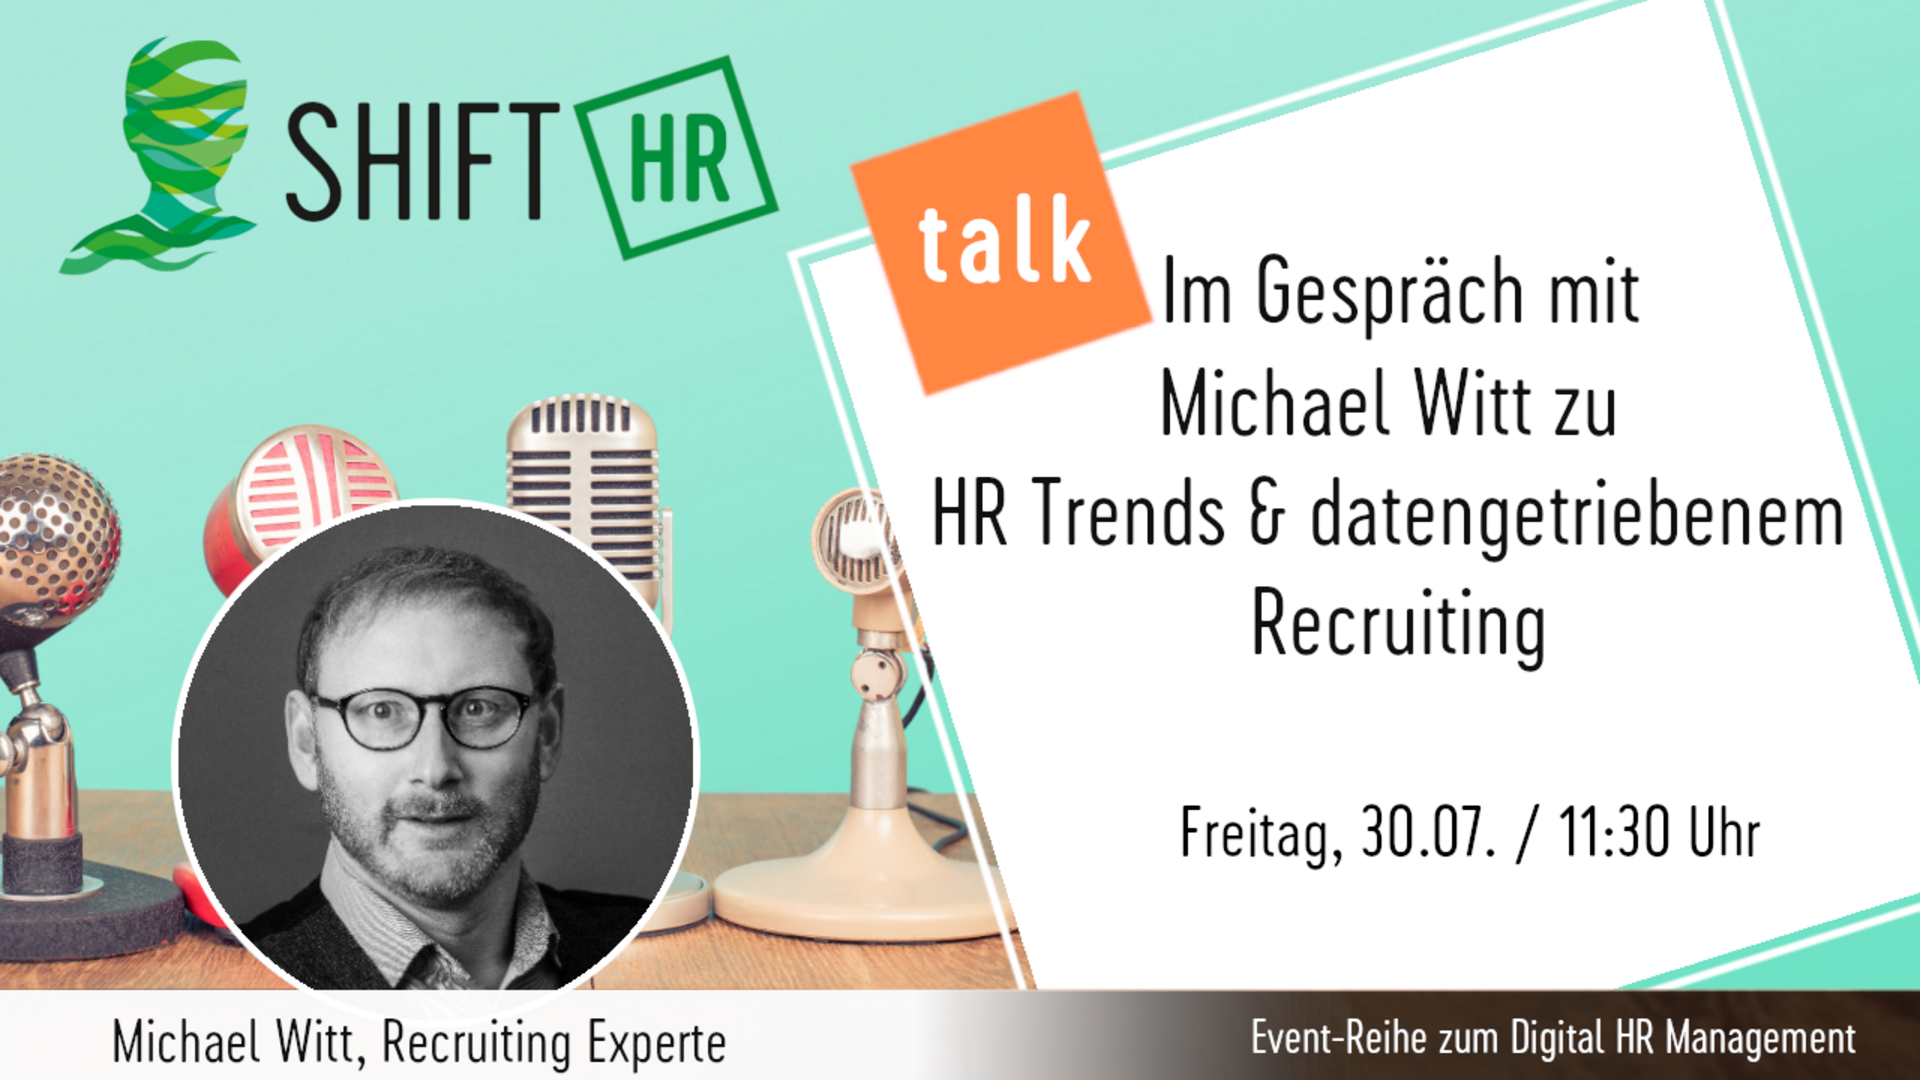 Im Gespräch mit Michael Witt zu HR Trends & datengetriebenem Recruiting